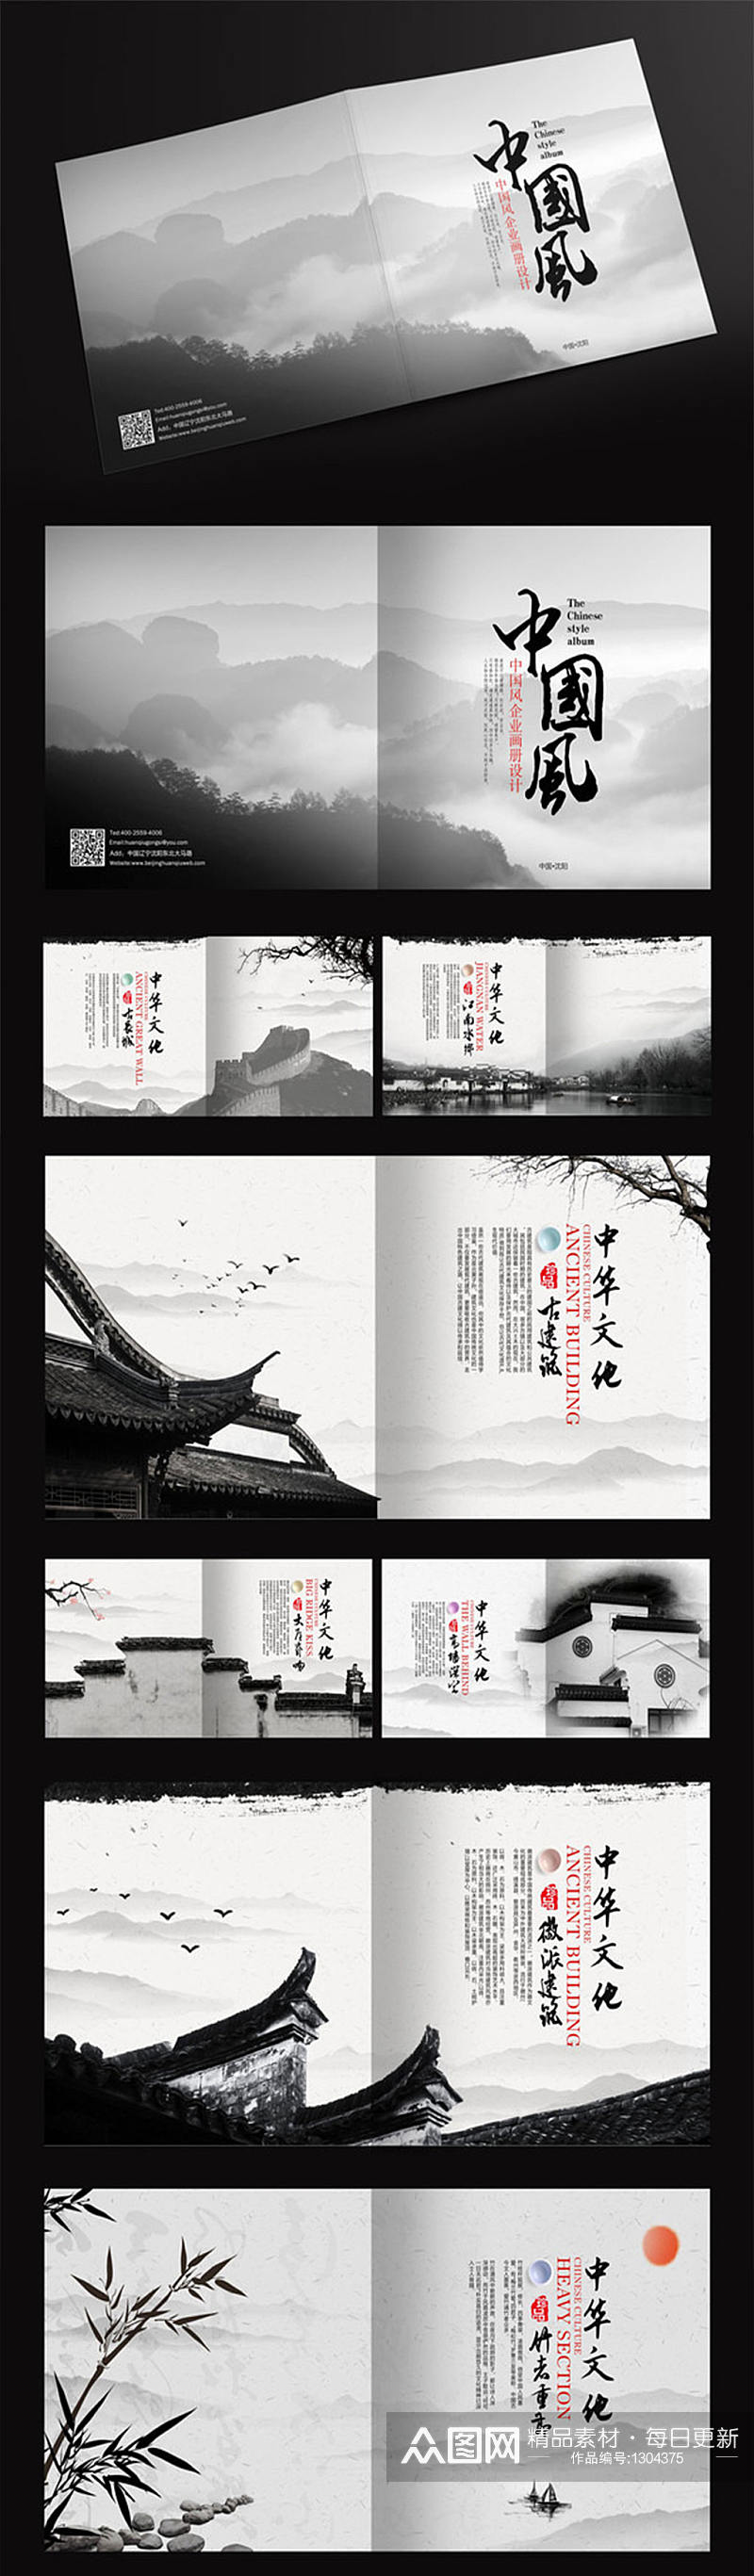 简约中国风画册设计素材